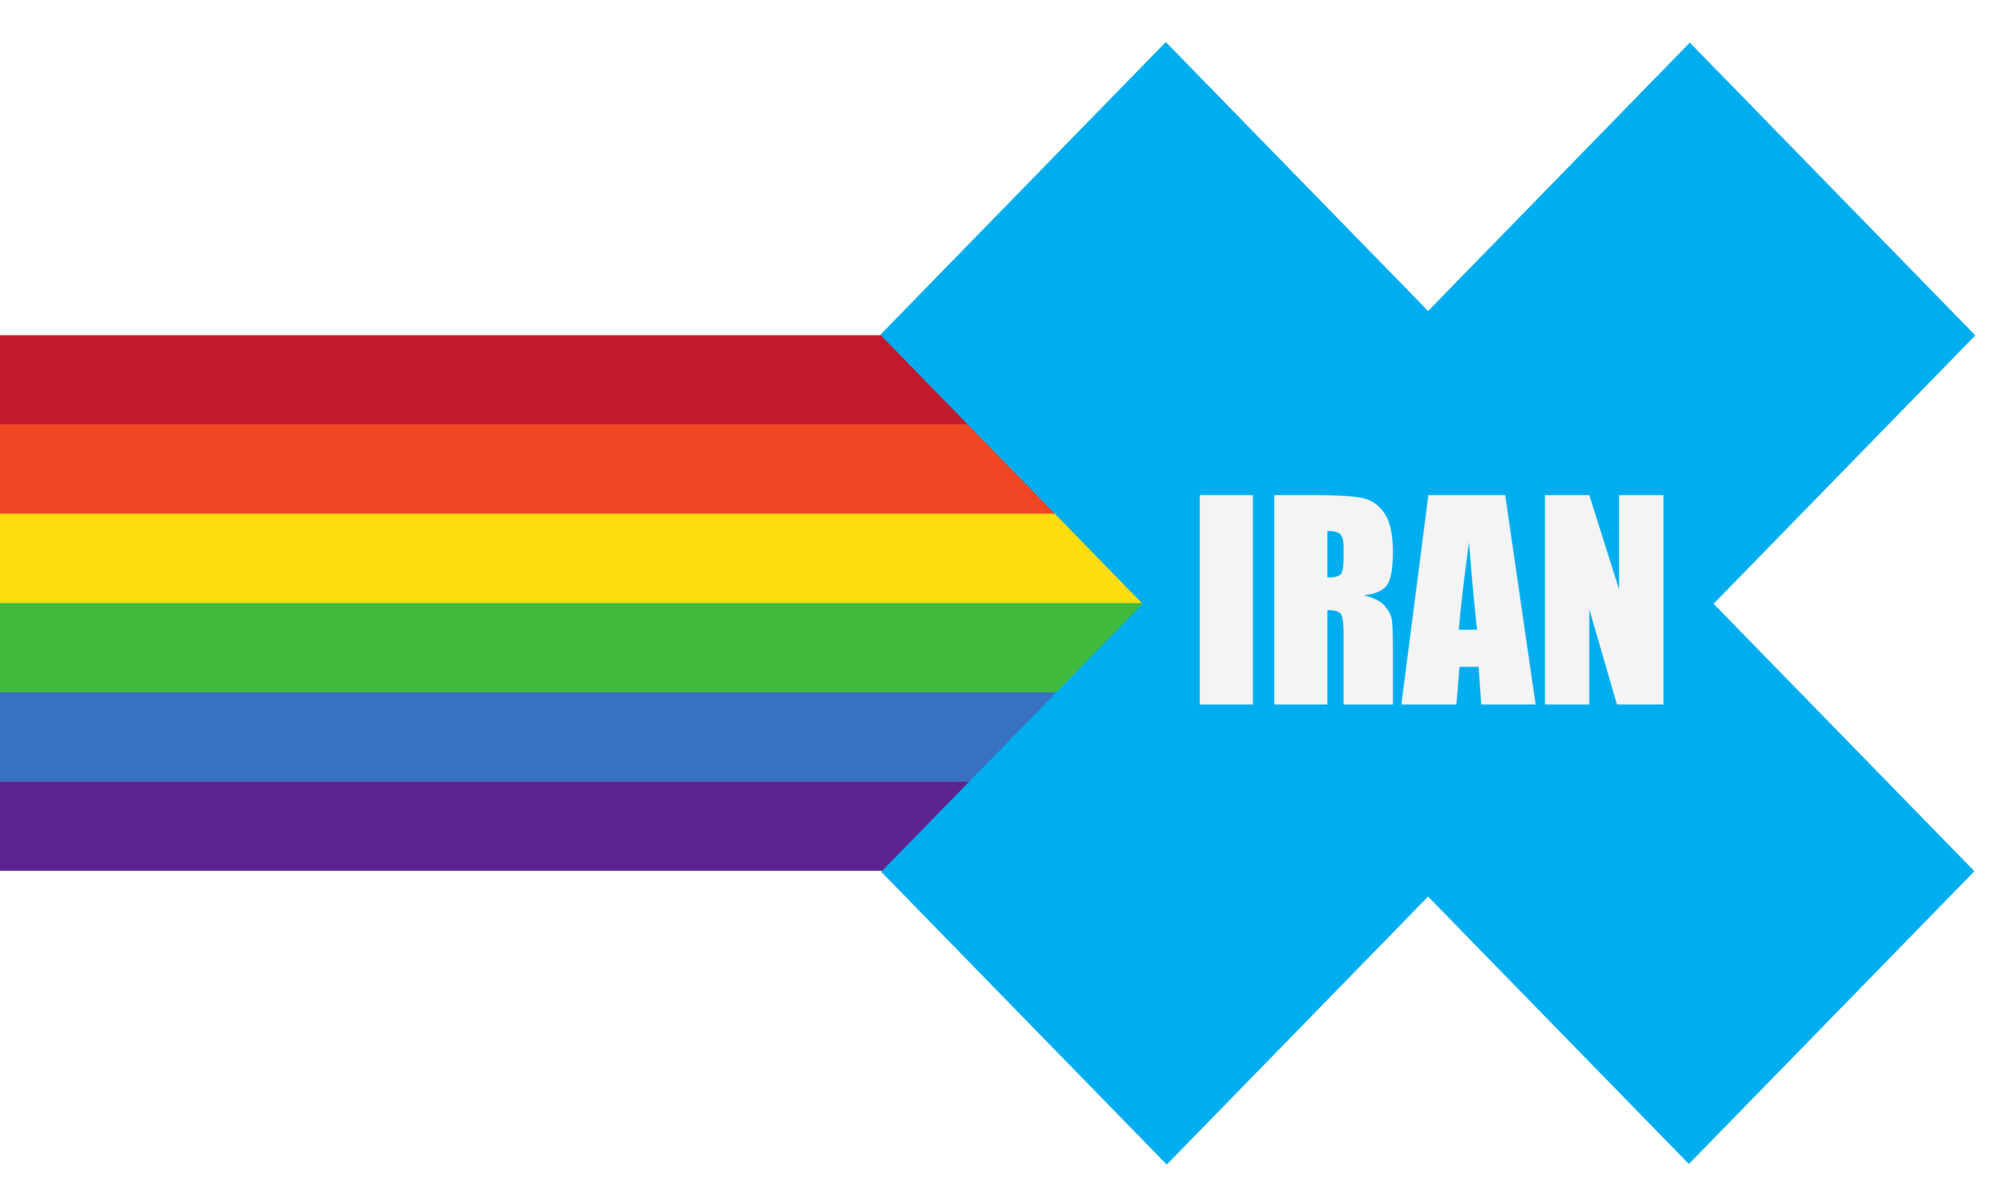 Iran in Pride Parade flag